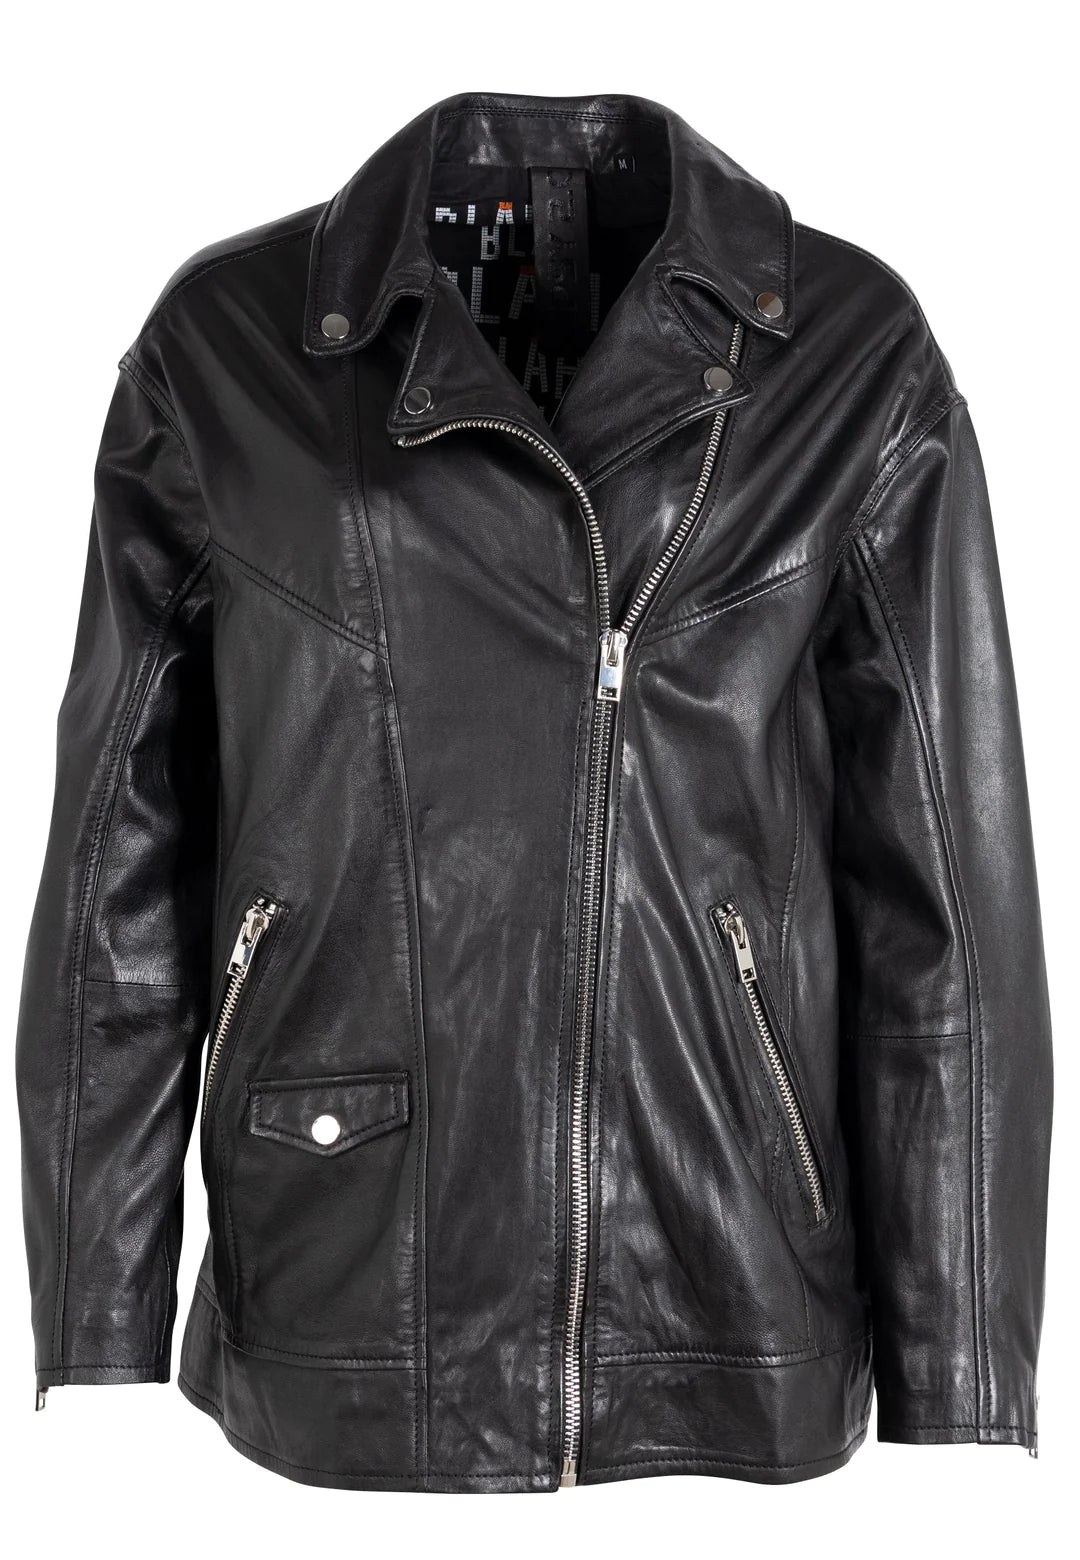 Yori Leather Jacket